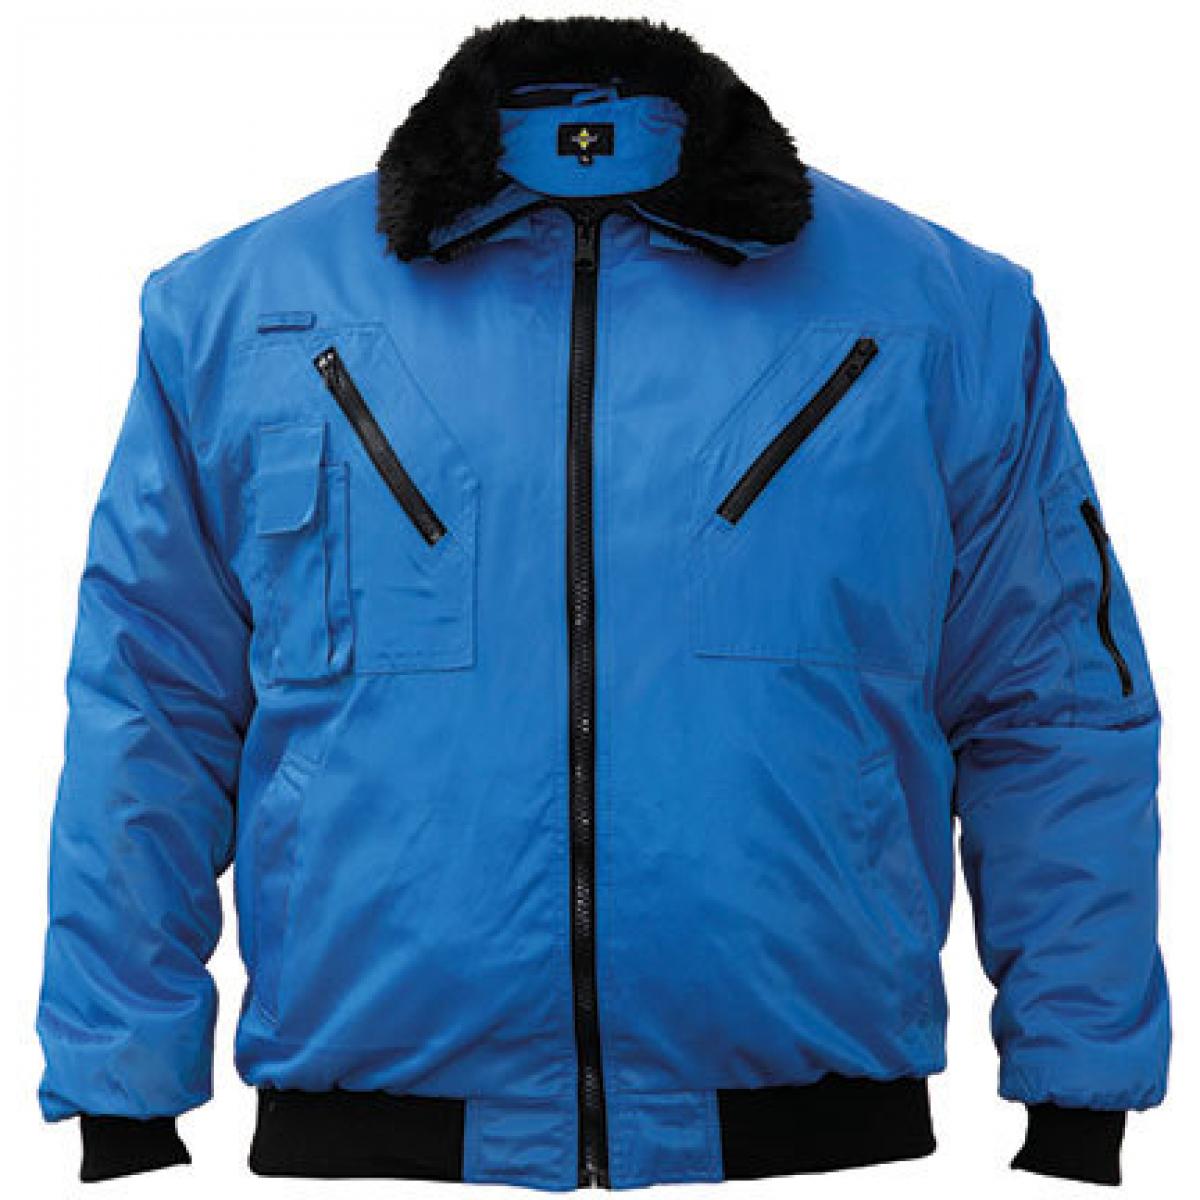 Hersteller: Korntex Herstellernummer: KXPJ Artikelbezeichnung: Pilot Jacket, Vier-in-eins Pilotenjacke Farbe: Blue